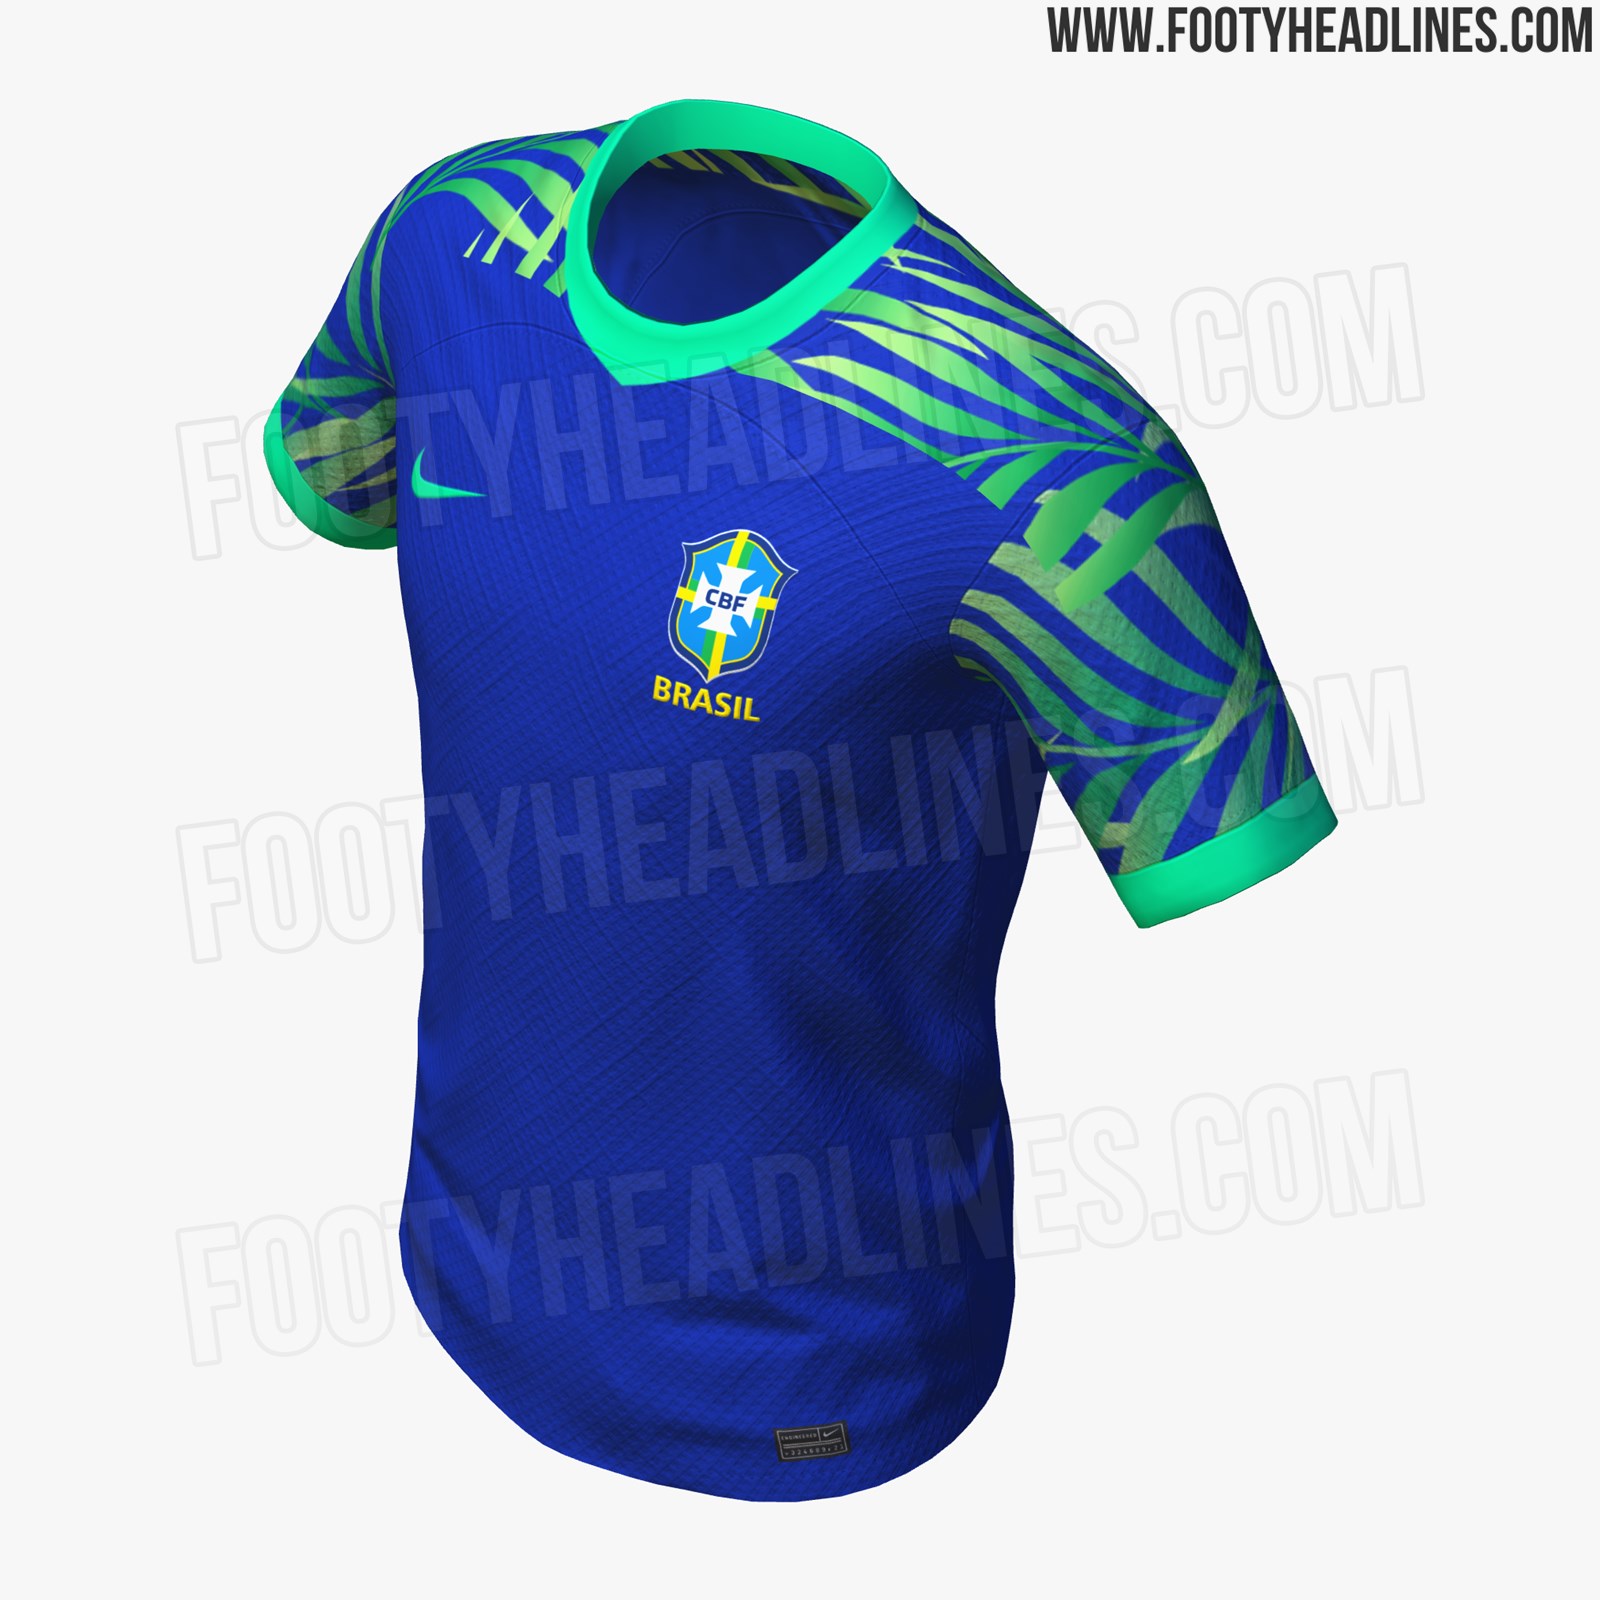 Brasilien 2023 Frauen-WM Auswärtstrikot geleakt - Nur Fussball